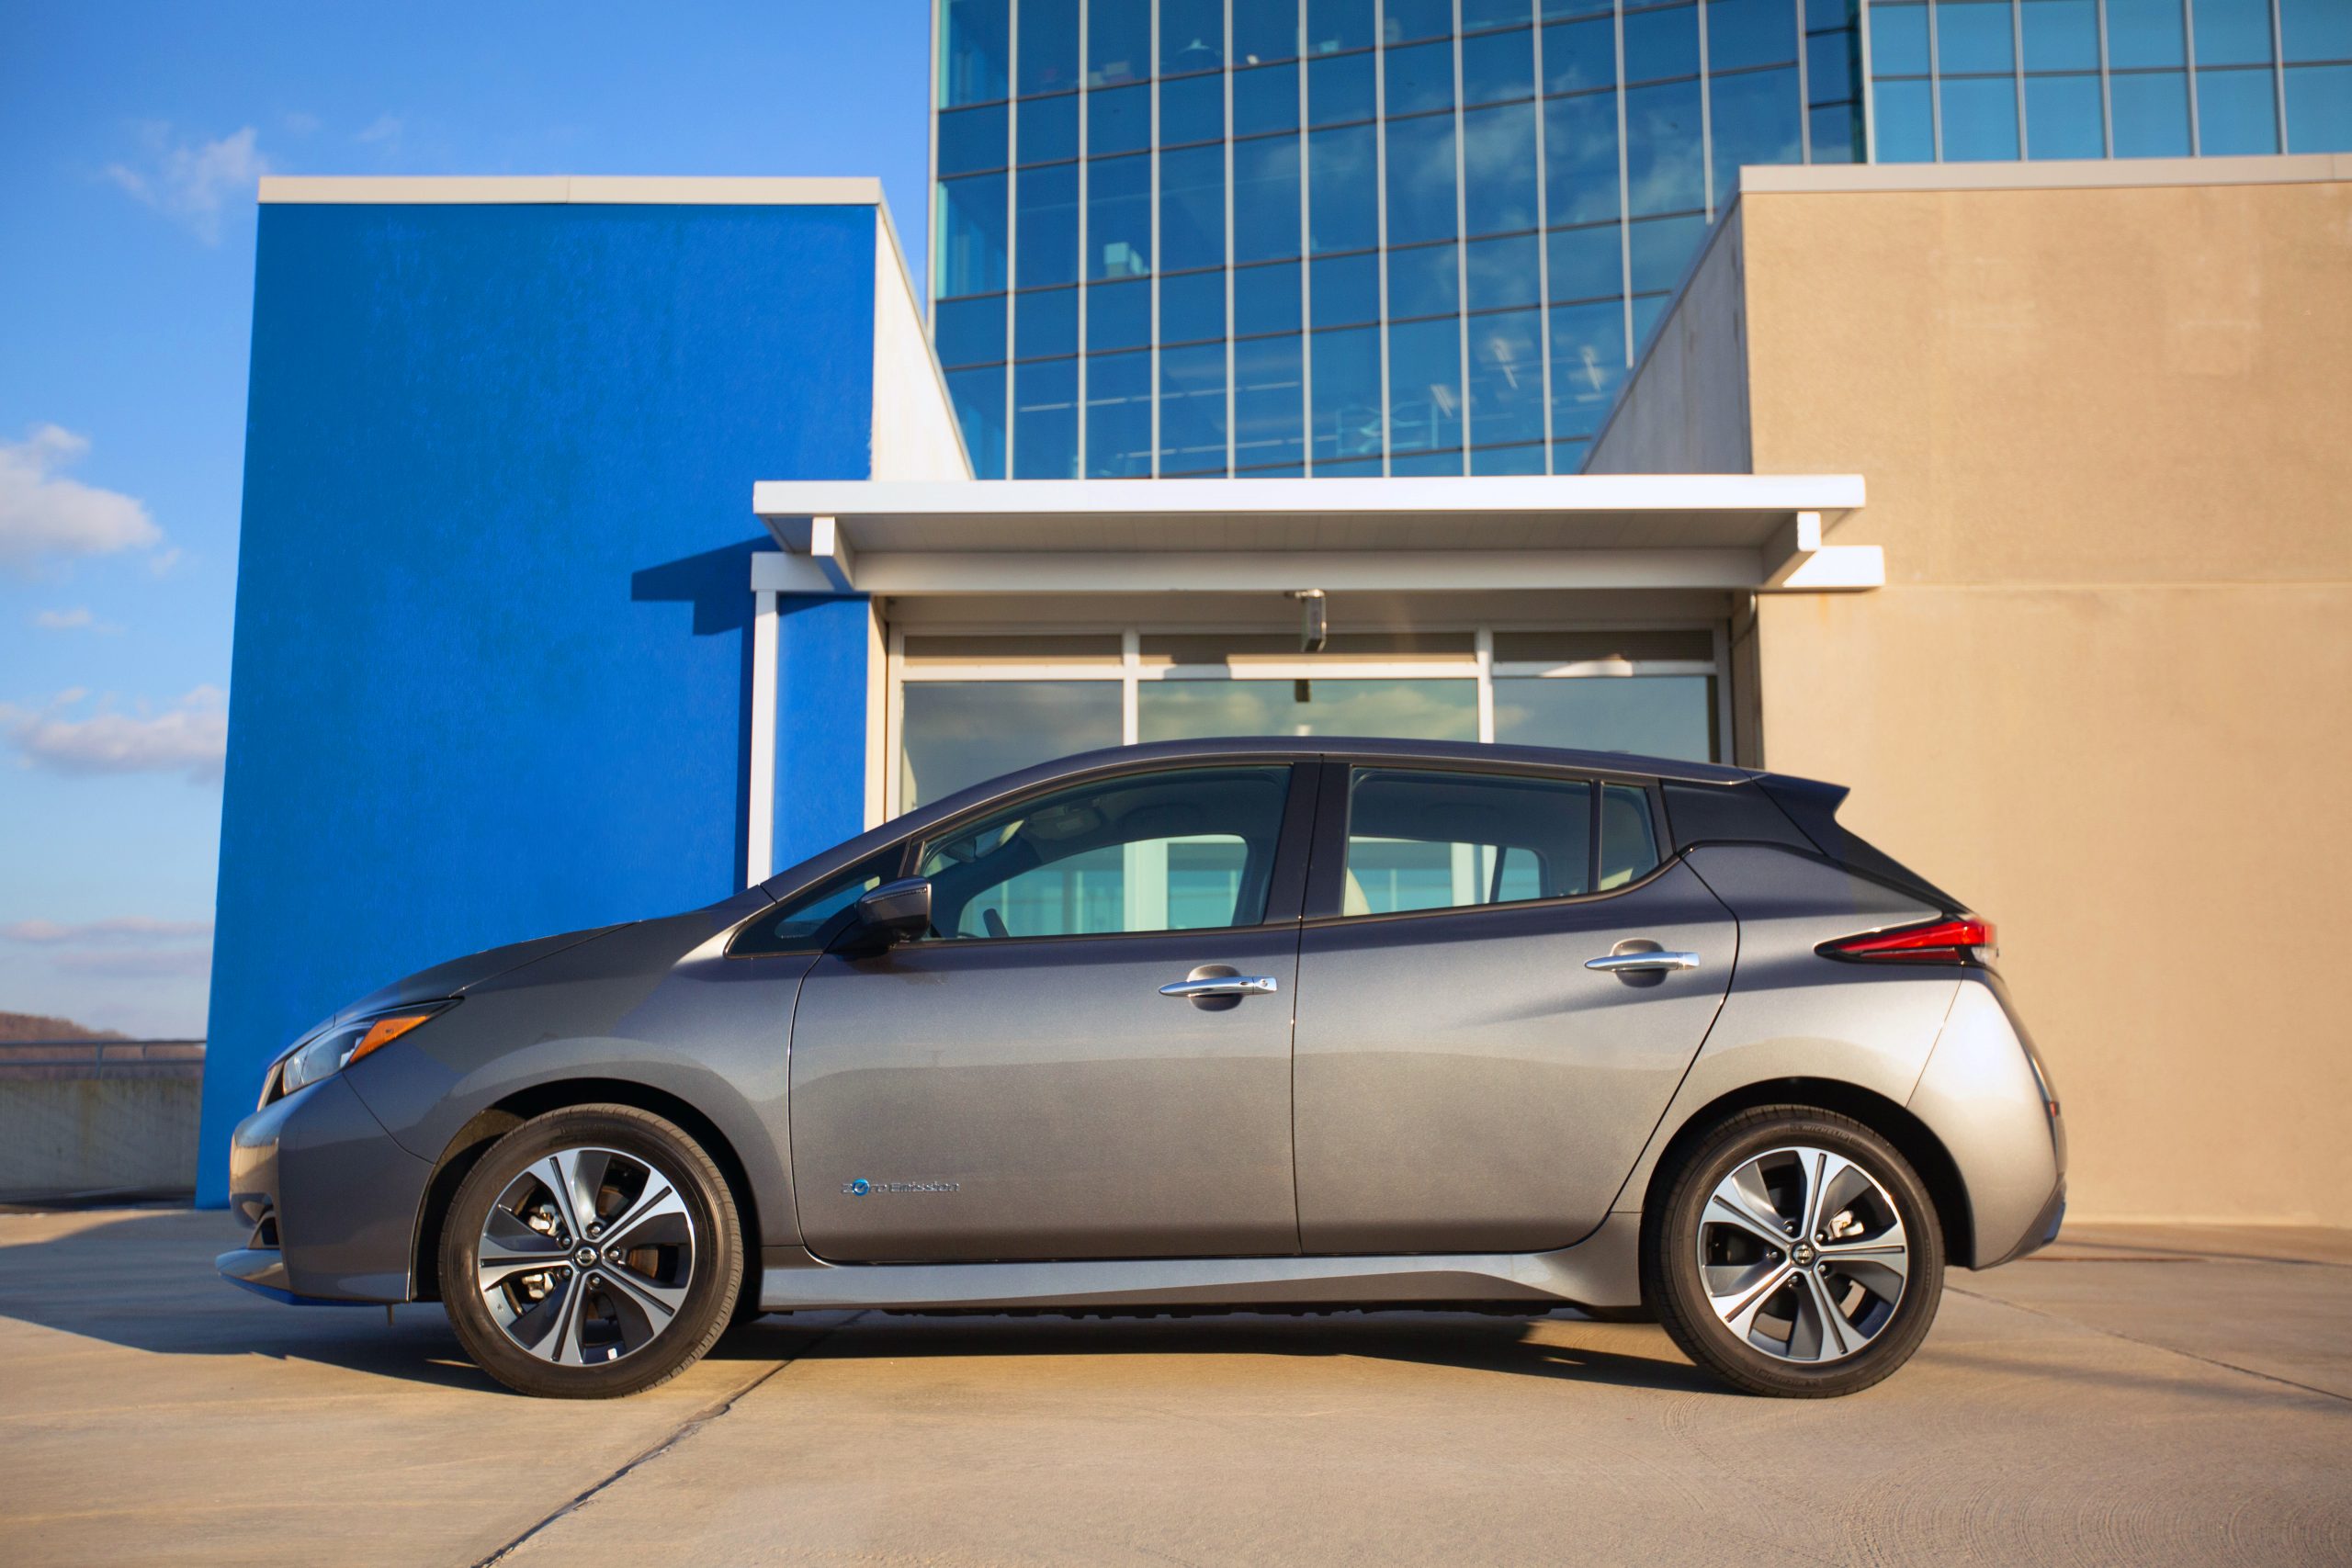 2022-es Nissan Leaf bérelhető havi 90 dollárnál kevesebbért